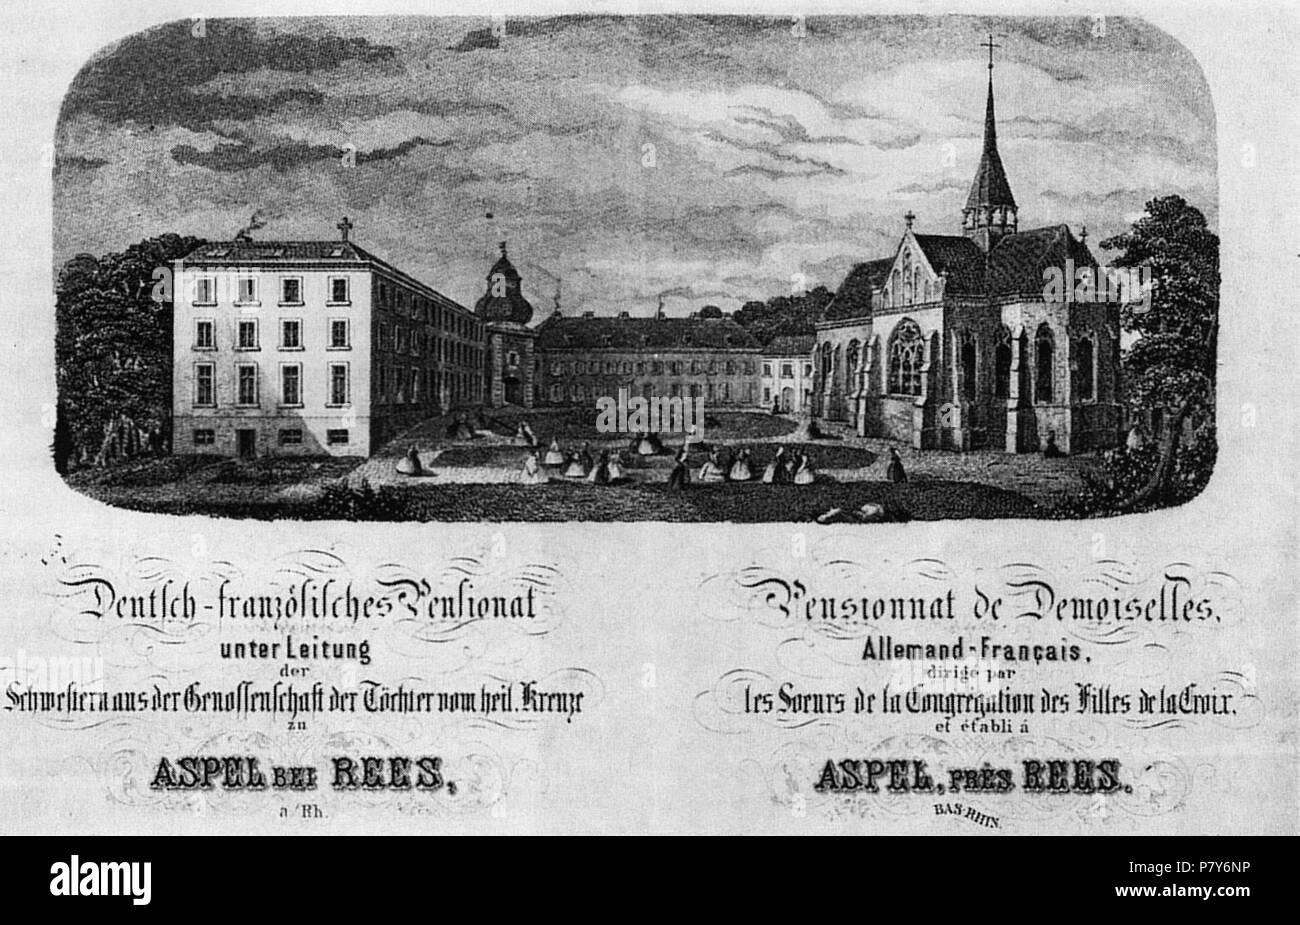 Deutsch: Werbung für das auf Haus Aspel beheimatete Mädchenpensionat . before 1871 188 Haus Aspel Anzeige vor 1871 Stock Photo